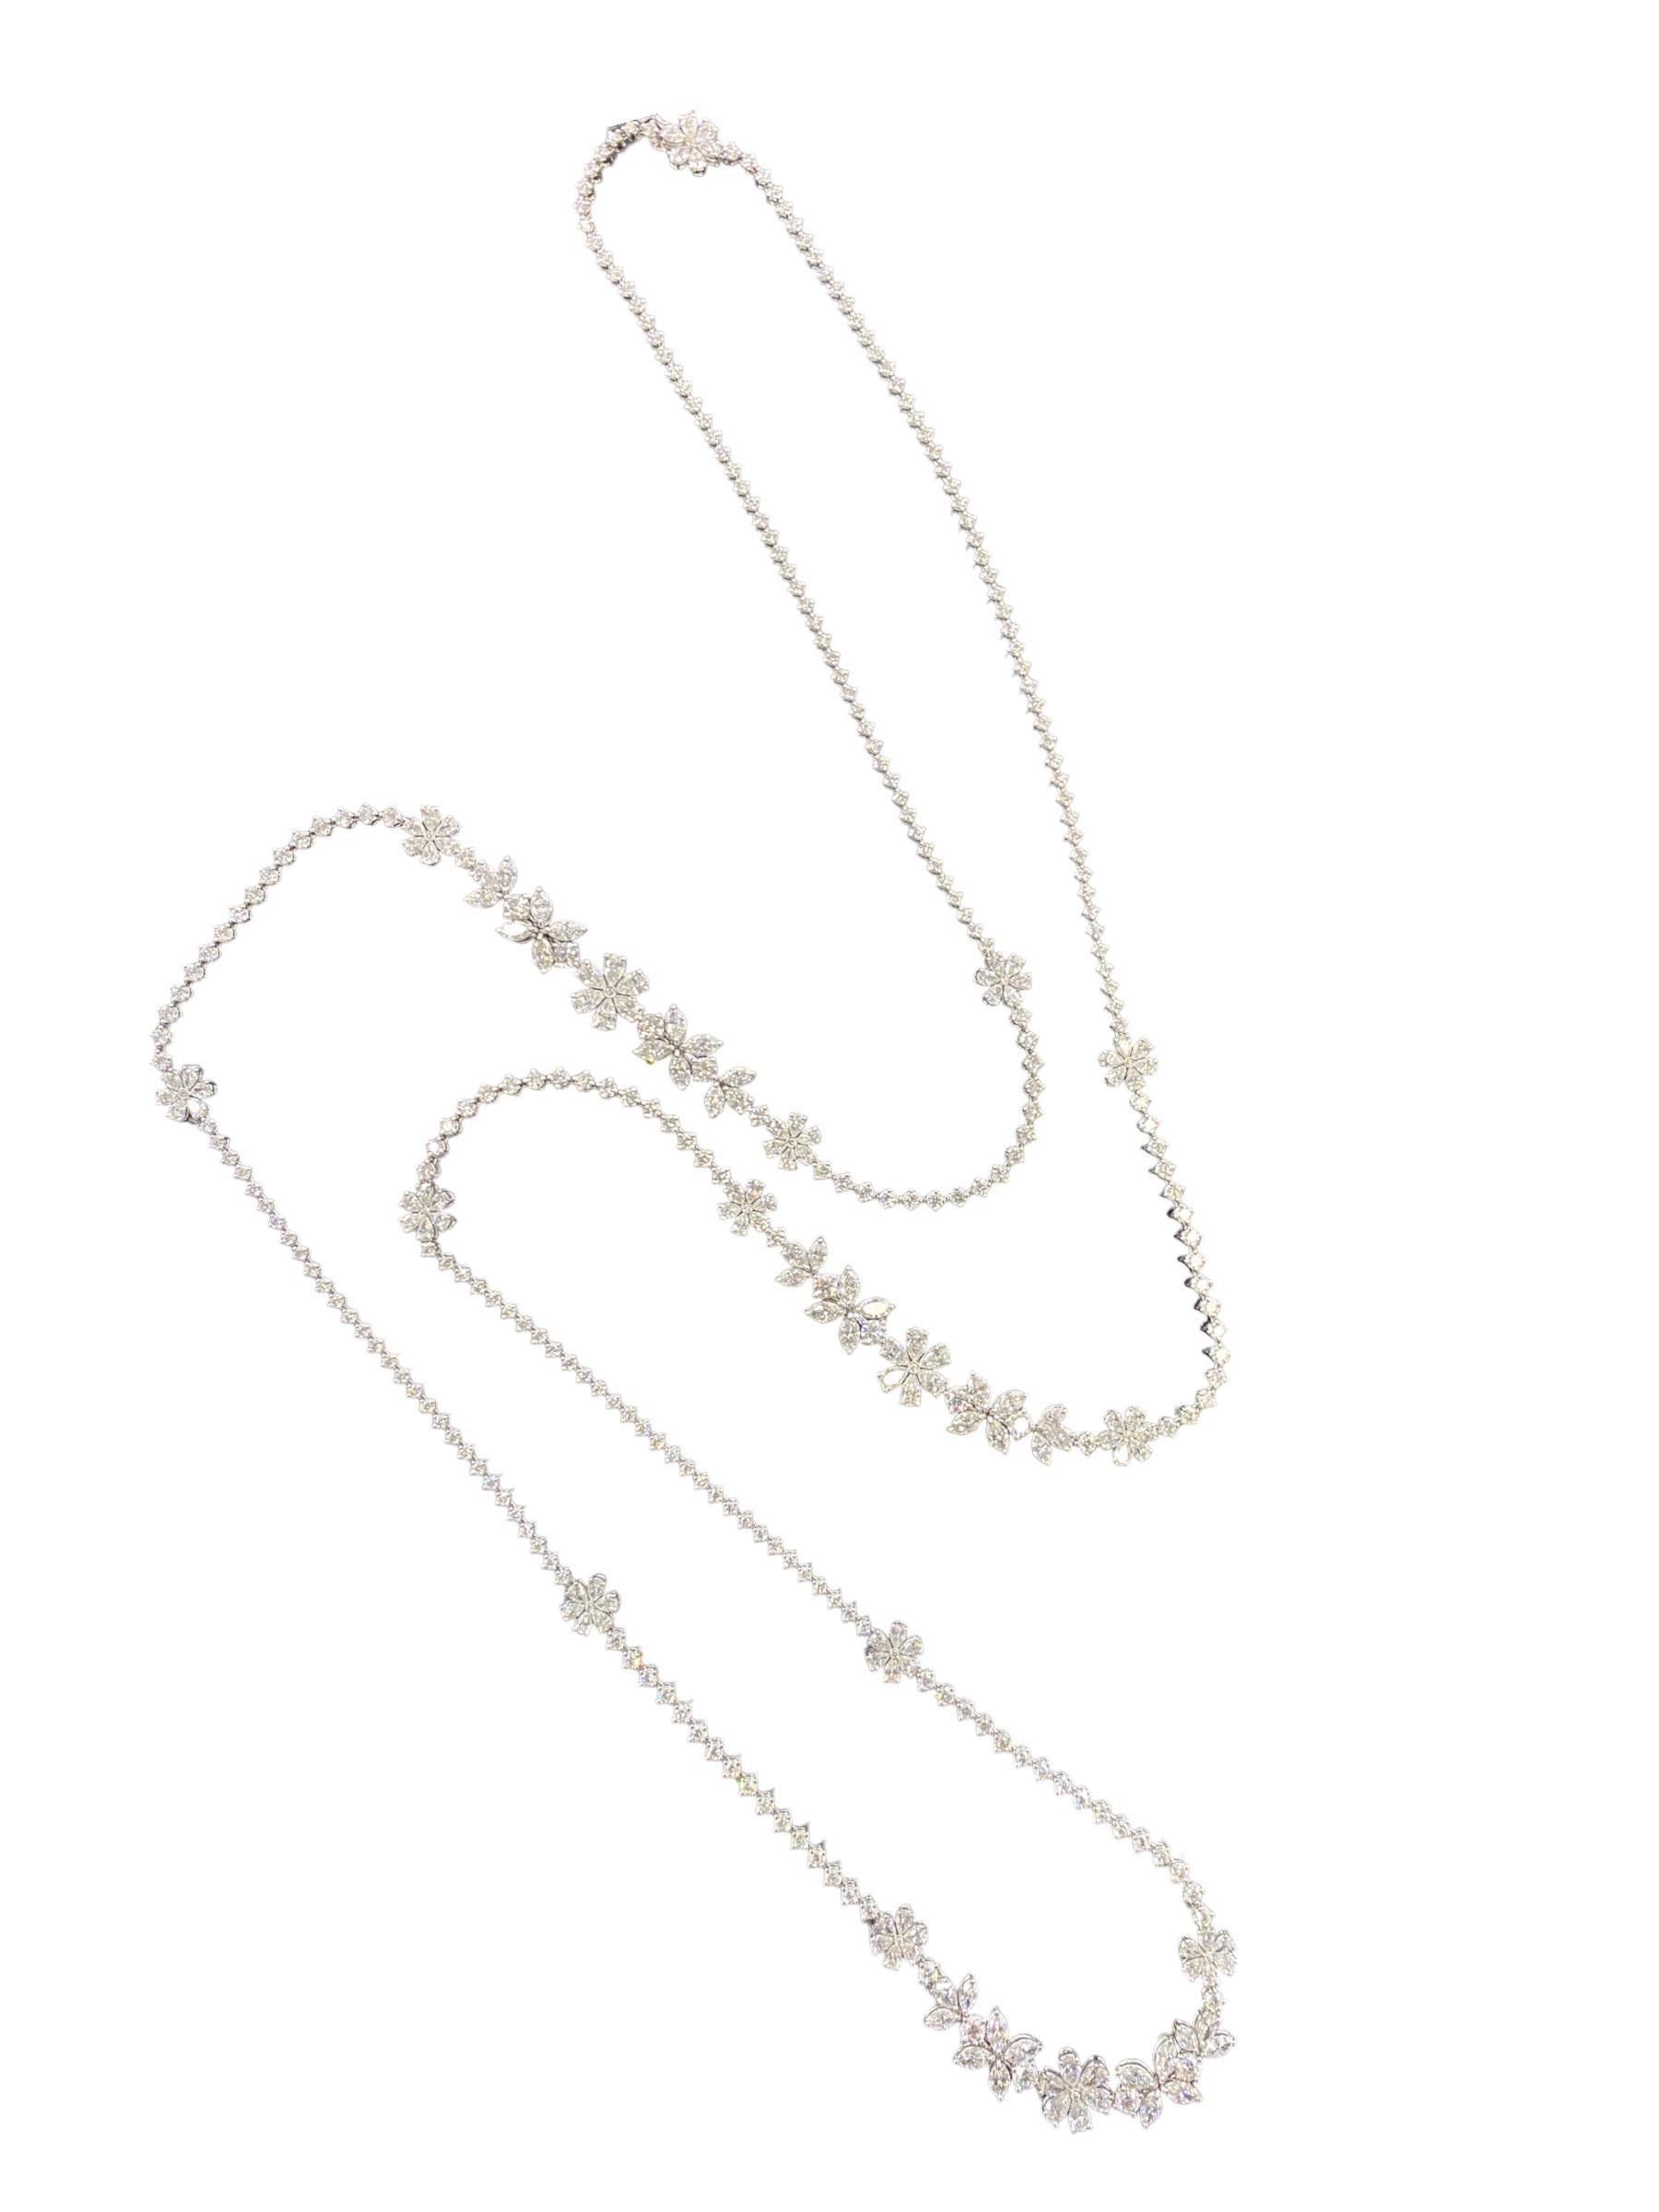 Zydo 18k Diamond Flower Necklace 27.28 Carats VS-F Color 2